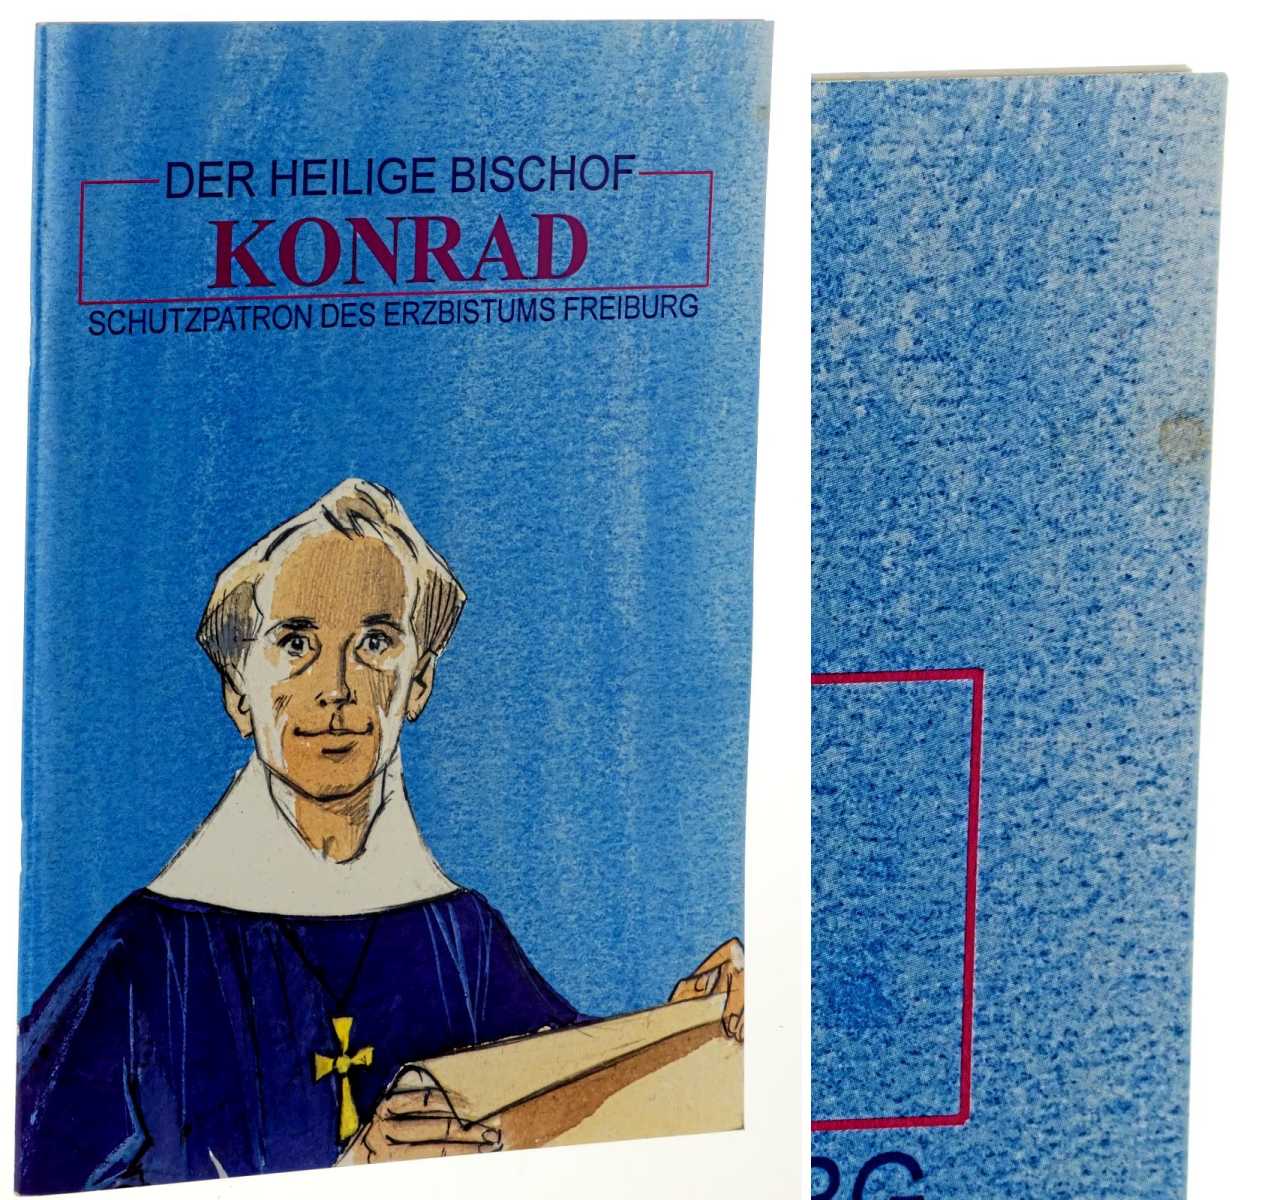   Der heilige Bischof Konrad. Schutzpatron des Erzbistums Freiburg. Manuskript: Hildegard Nies. Zeichnung: Alain d' Orange. [Comic, Cartoon]. 